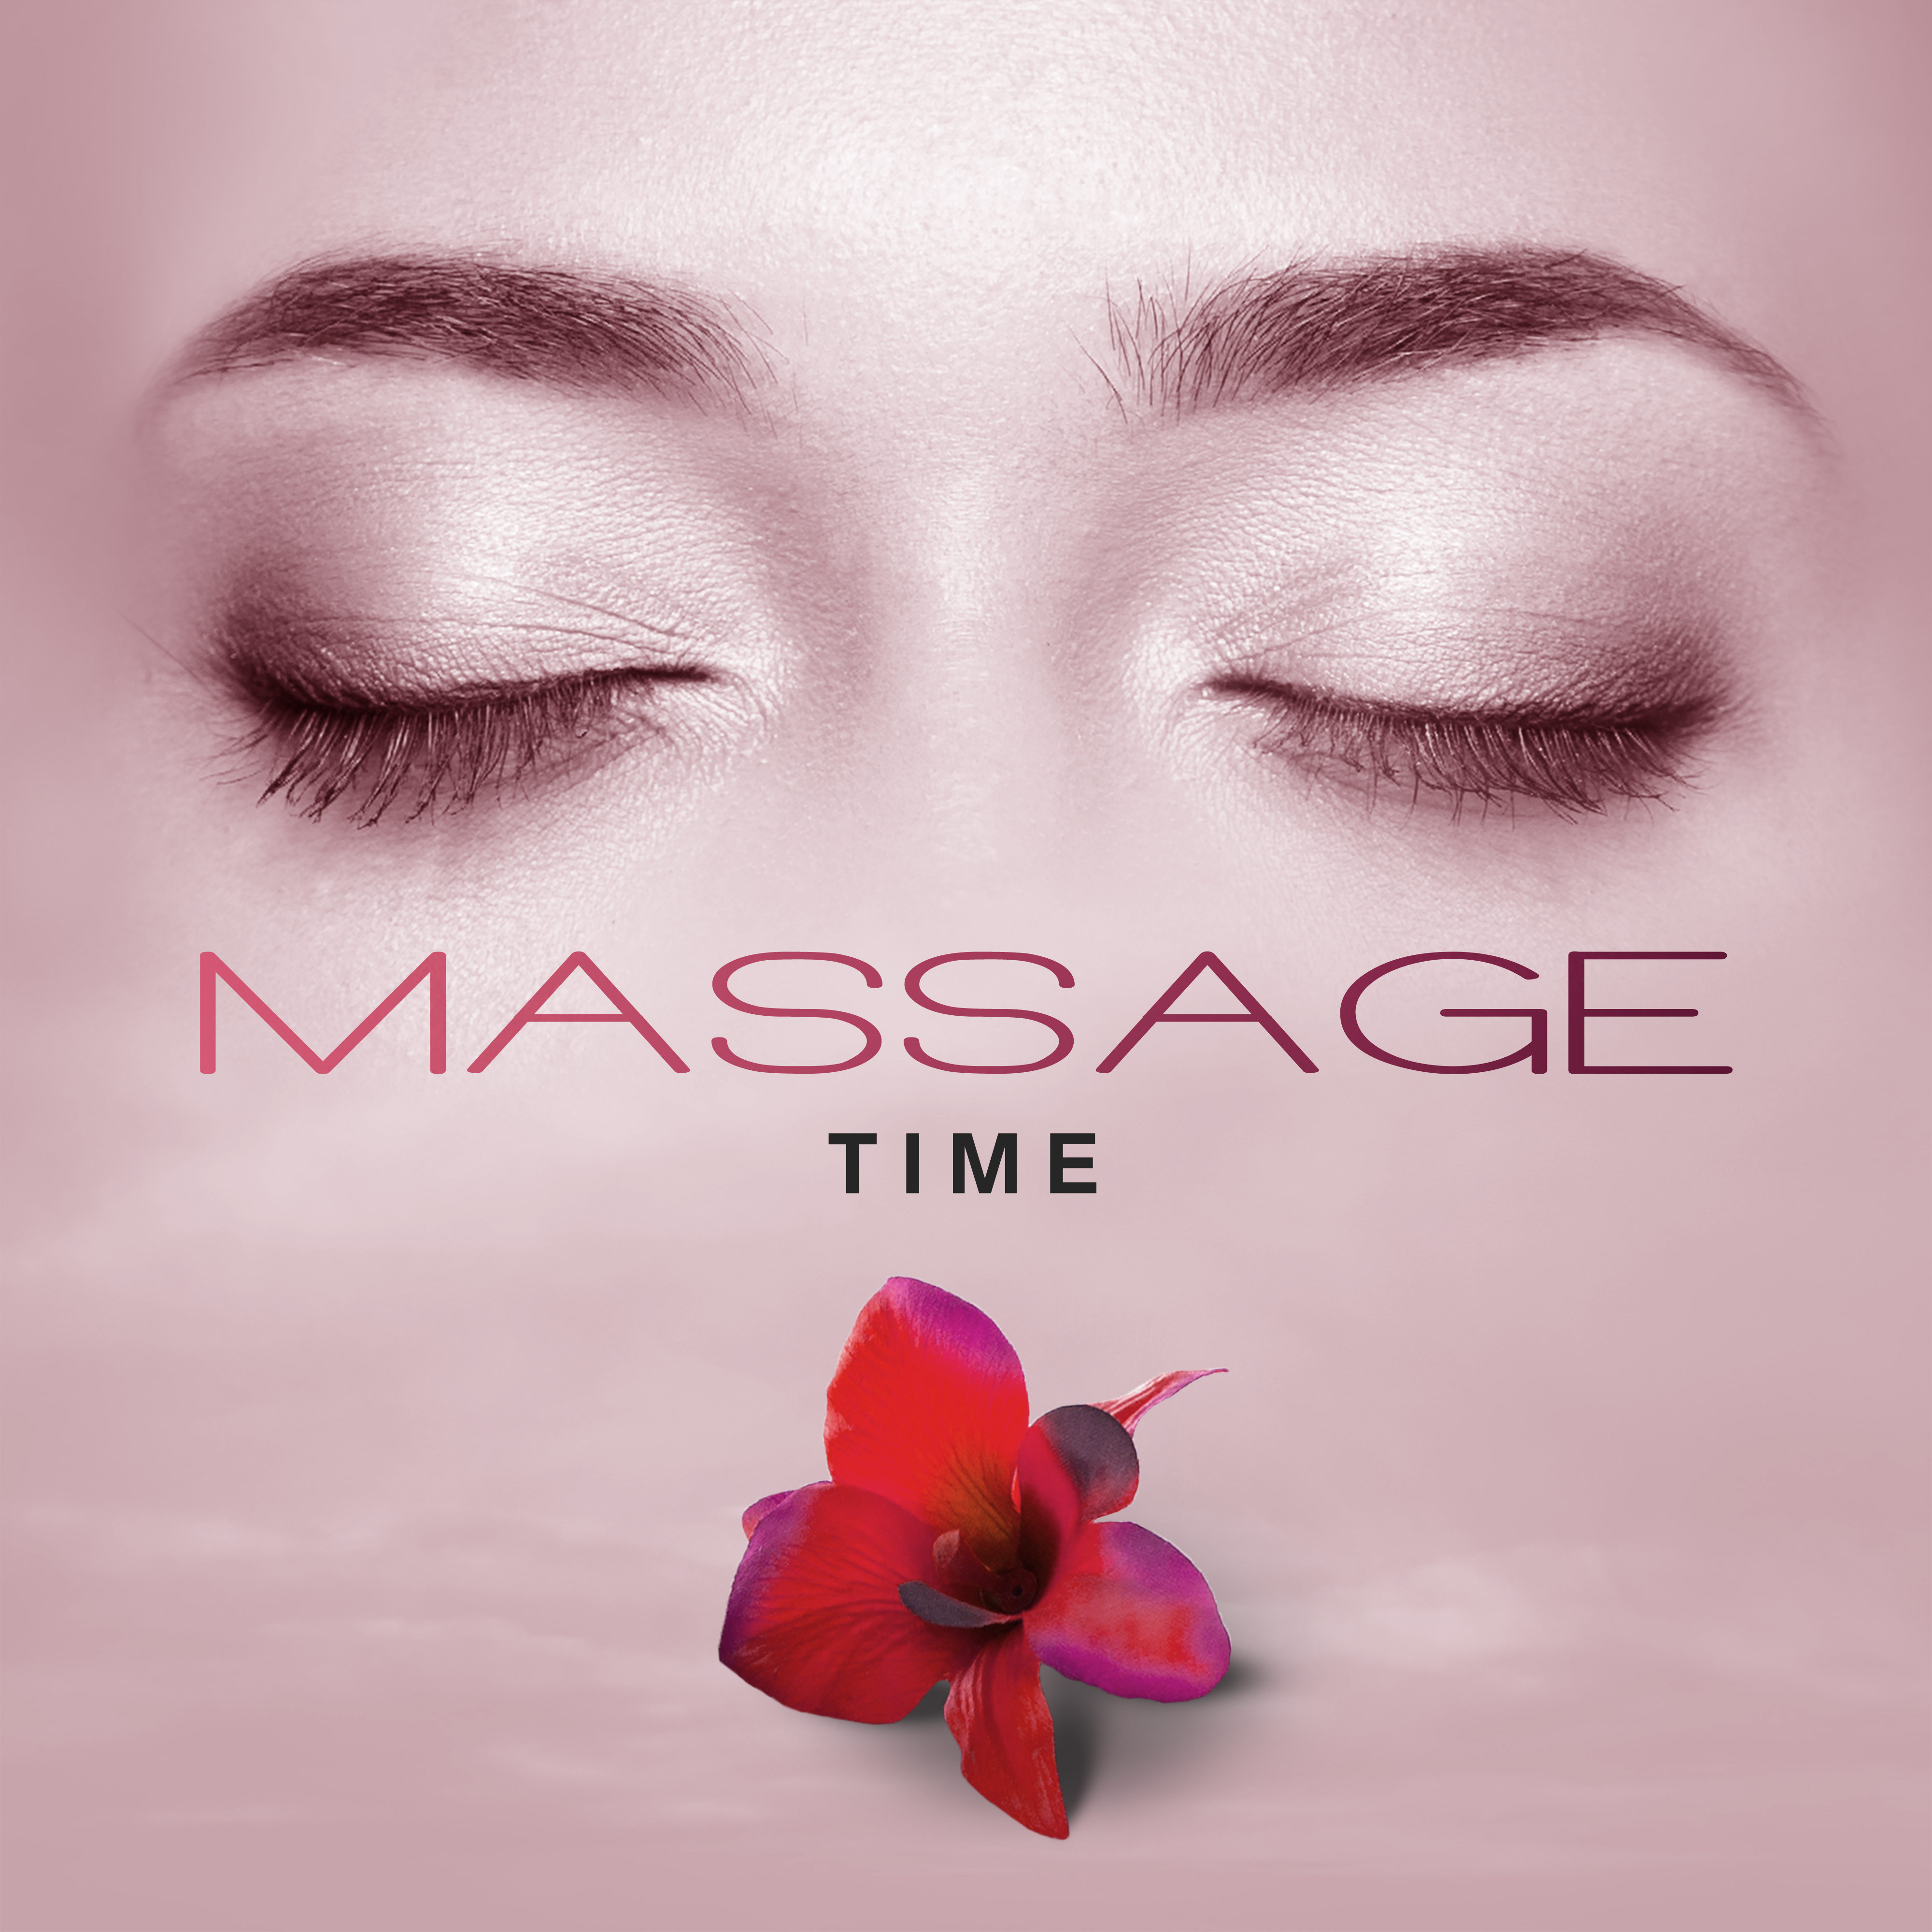 Massage Time – Relaxing Music for Massage, Beauty Treatments, Wellness, Spa, Rest, Zen